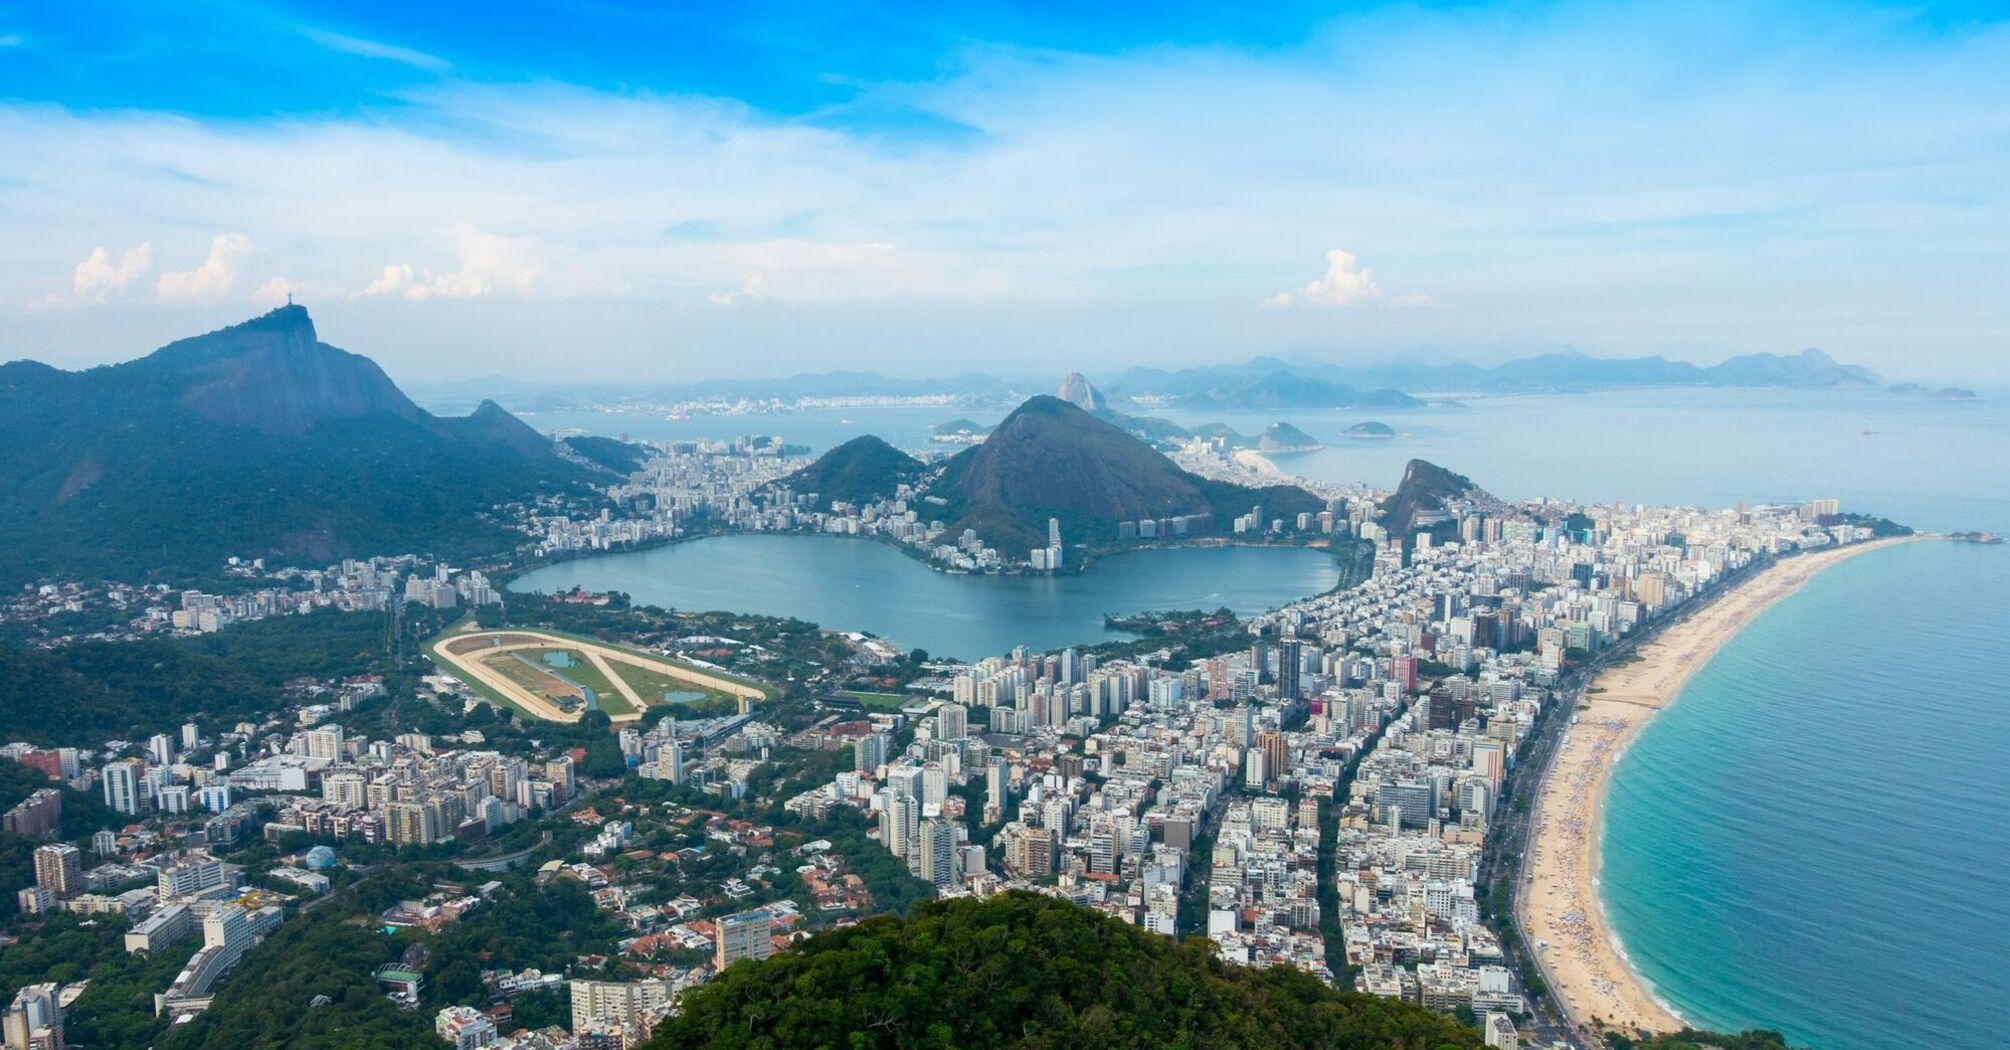 Aerial view of Rio de Janeiro's coastline and cityscape